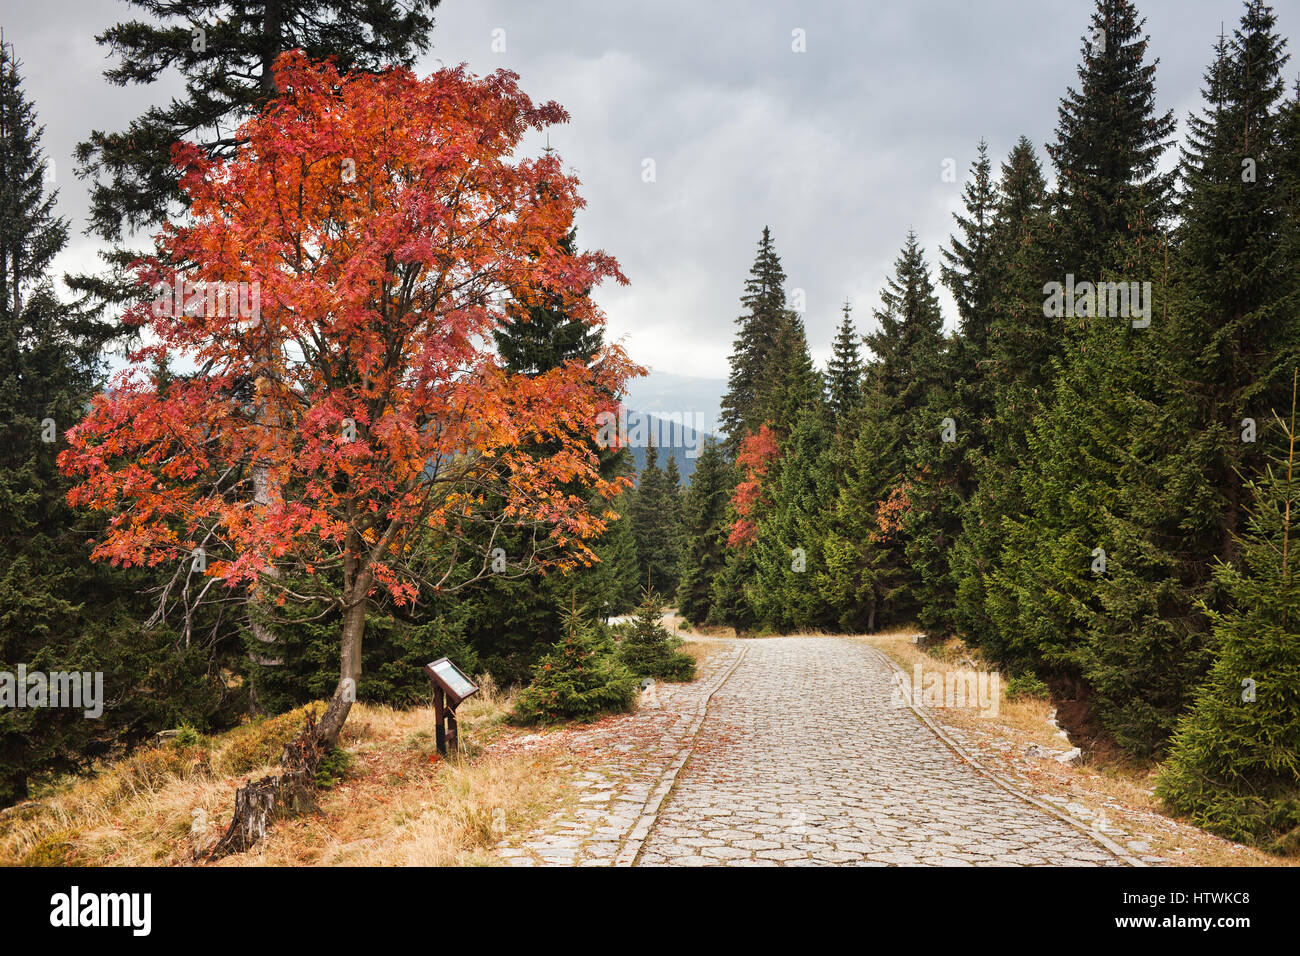 Paved road in autumn mountain forest, Karkonosze Mountains Sudetes, Poland Stock Photo